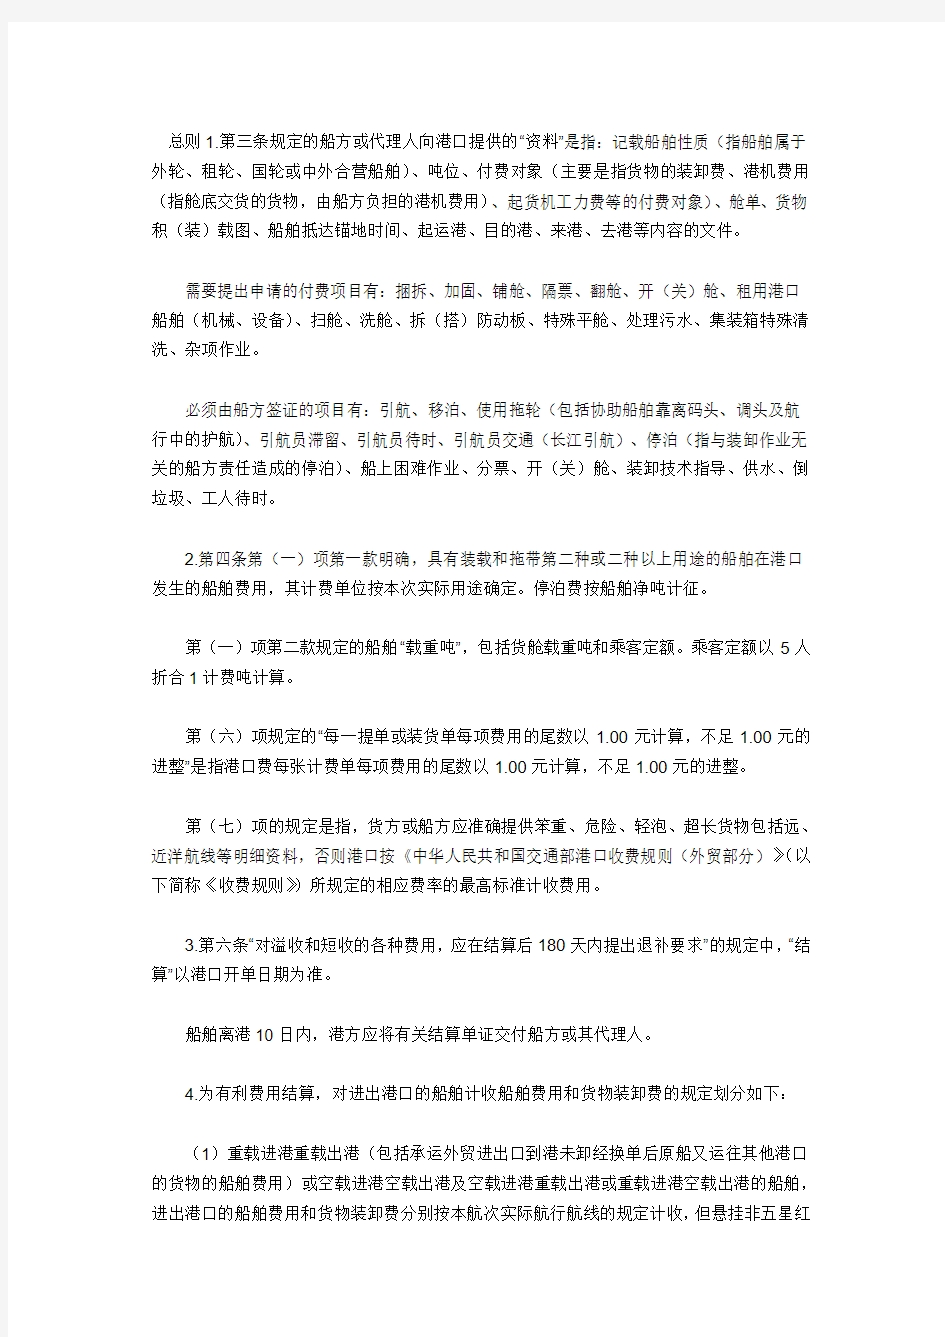 《中华人民共和国交通部港口收费规则(外贸部分)》解释